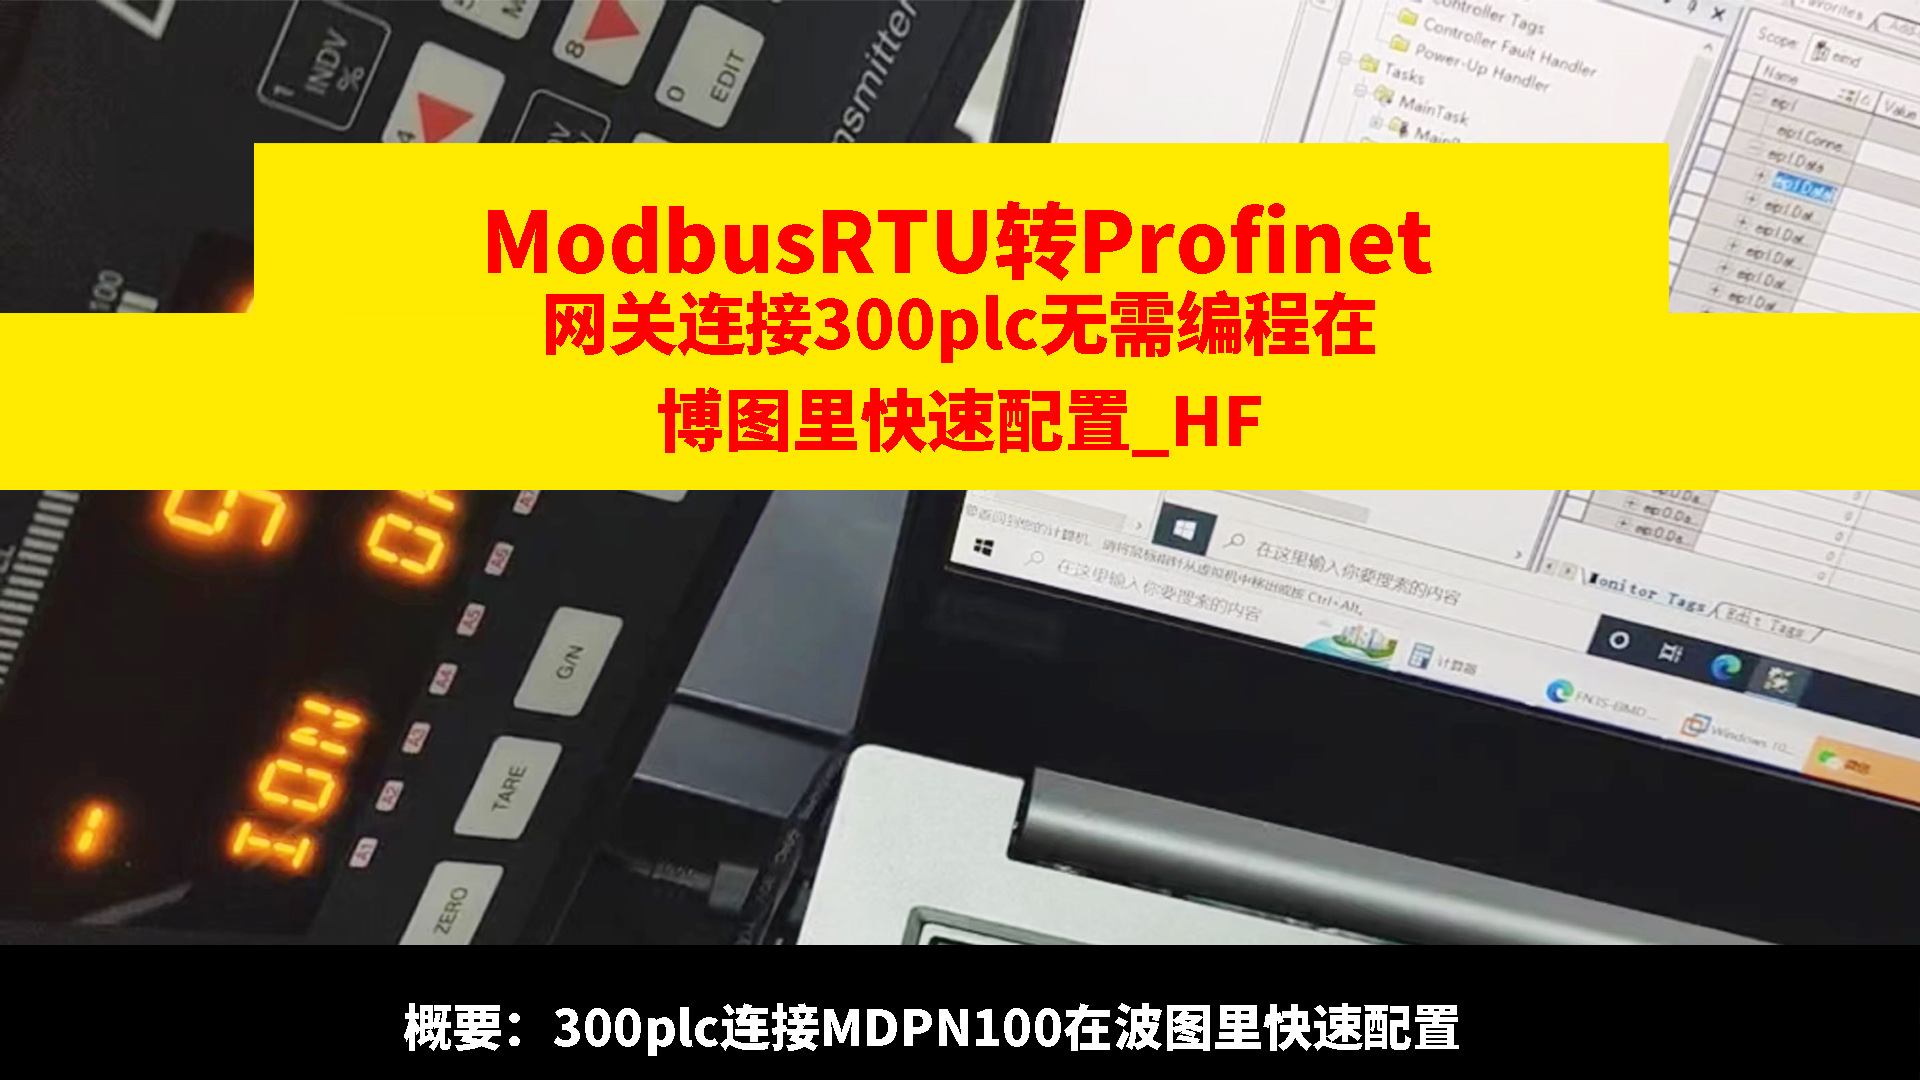 Modbus转Profinet网关连接300PLC在博图里快速配置# 485Modbus转Profinet